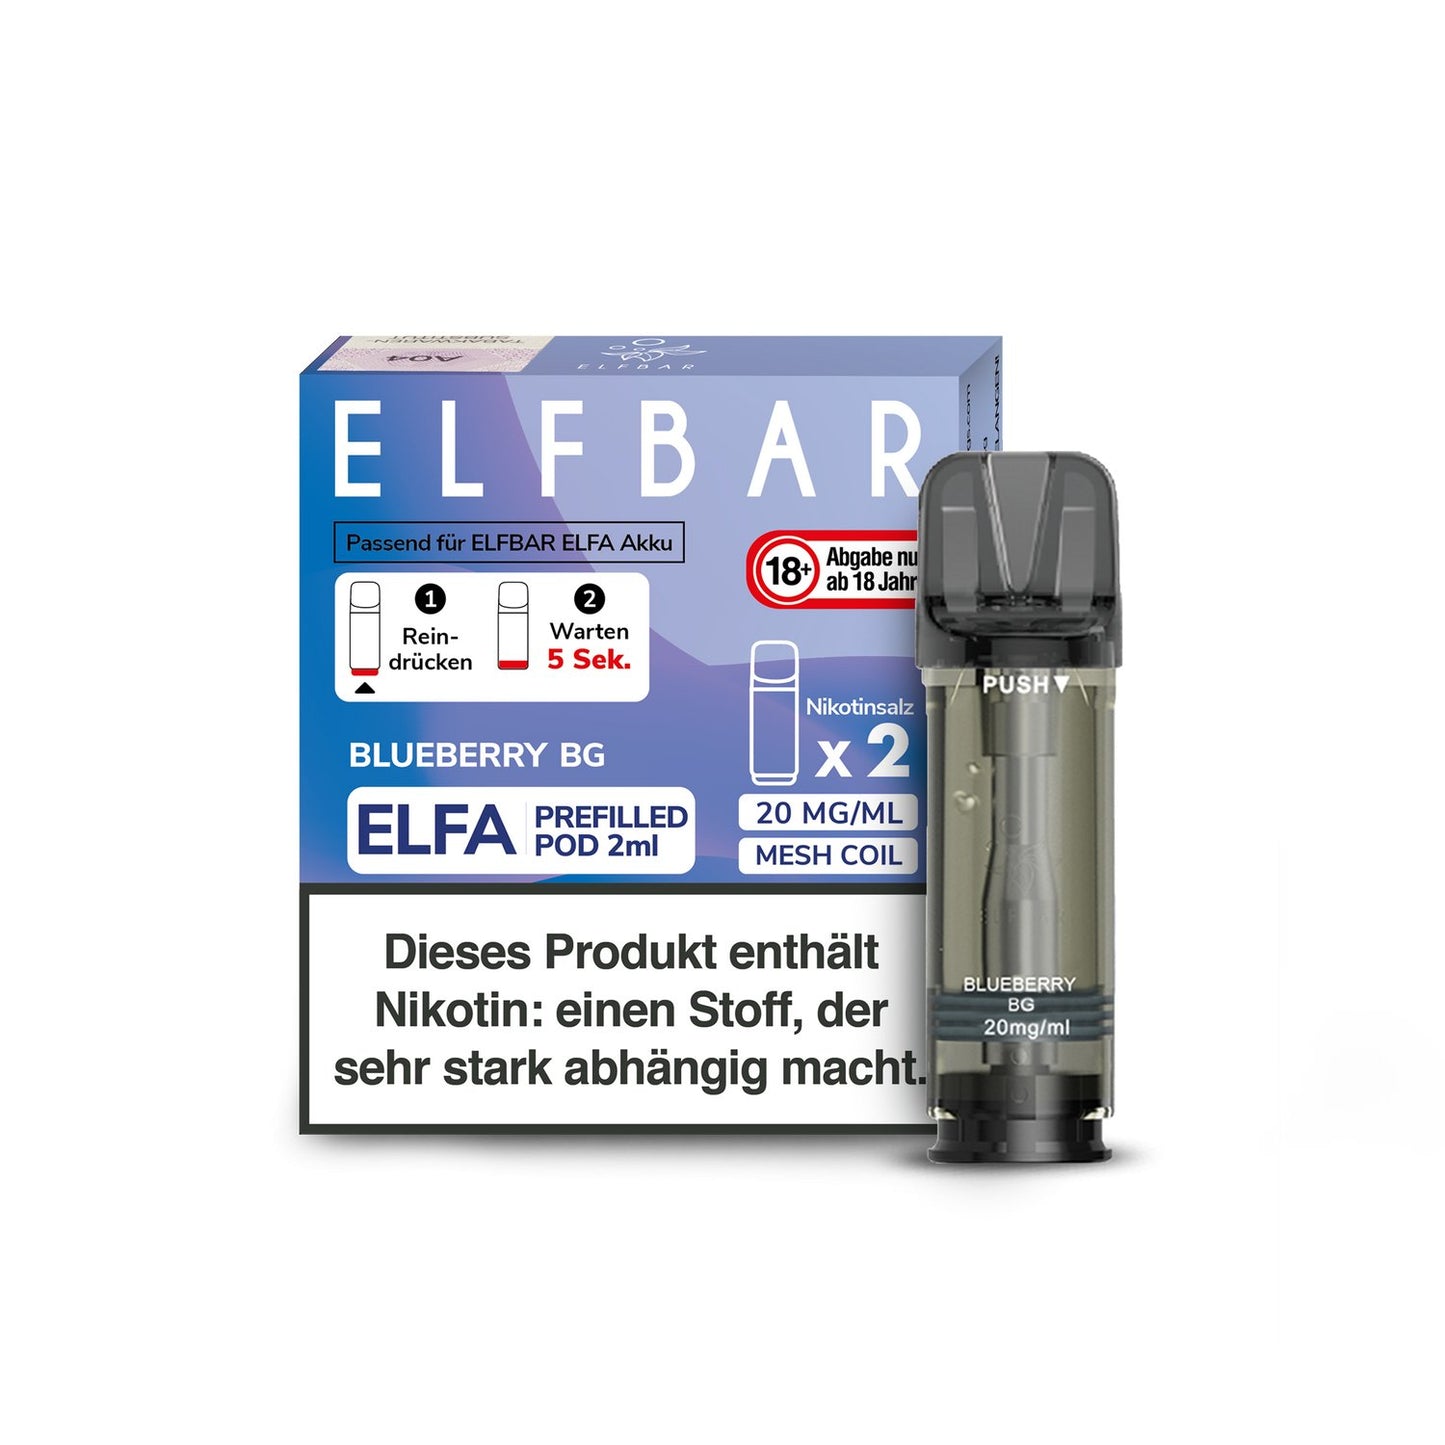 Elf Bar - Elfa - 2ml Prefilled Pods (2 Stück pro Packung) - Blueberry BG 1er Packung 20 mg/ml- Vapes4you